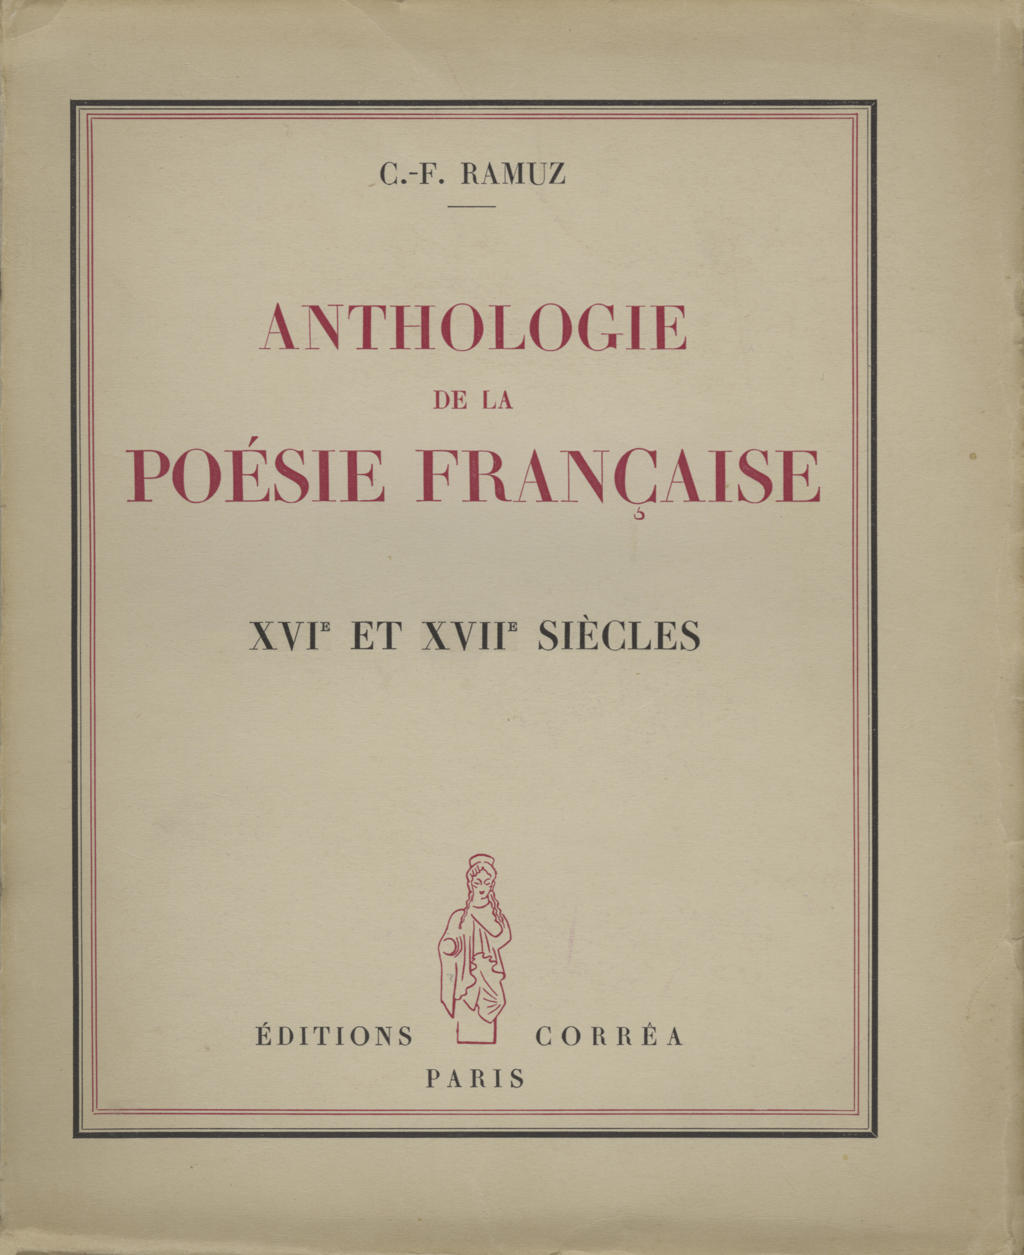 C.F.Ramuz, Anthologie de la Poésie française, 1943